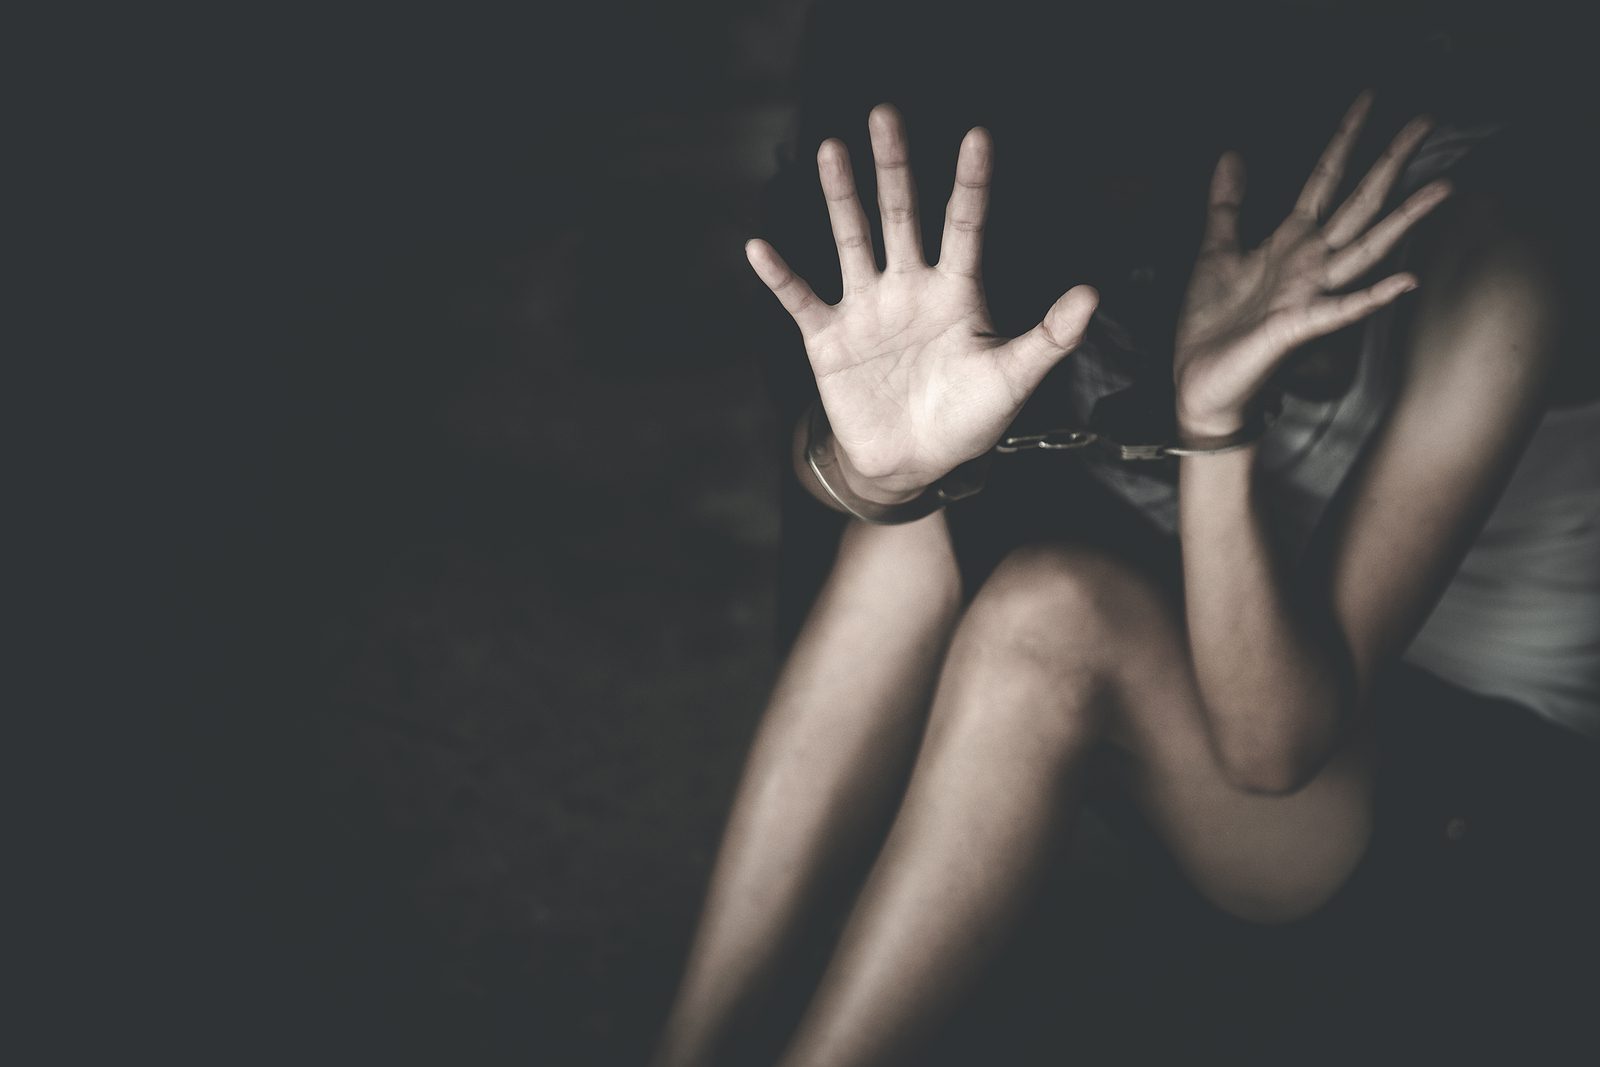 Συνελήφθη 36χρονος για σκληρή παιδική πορνογραφία: Εντοπίστηκαν αρχεία σεξουαλικής κακοποίησης πεντάχρονων!